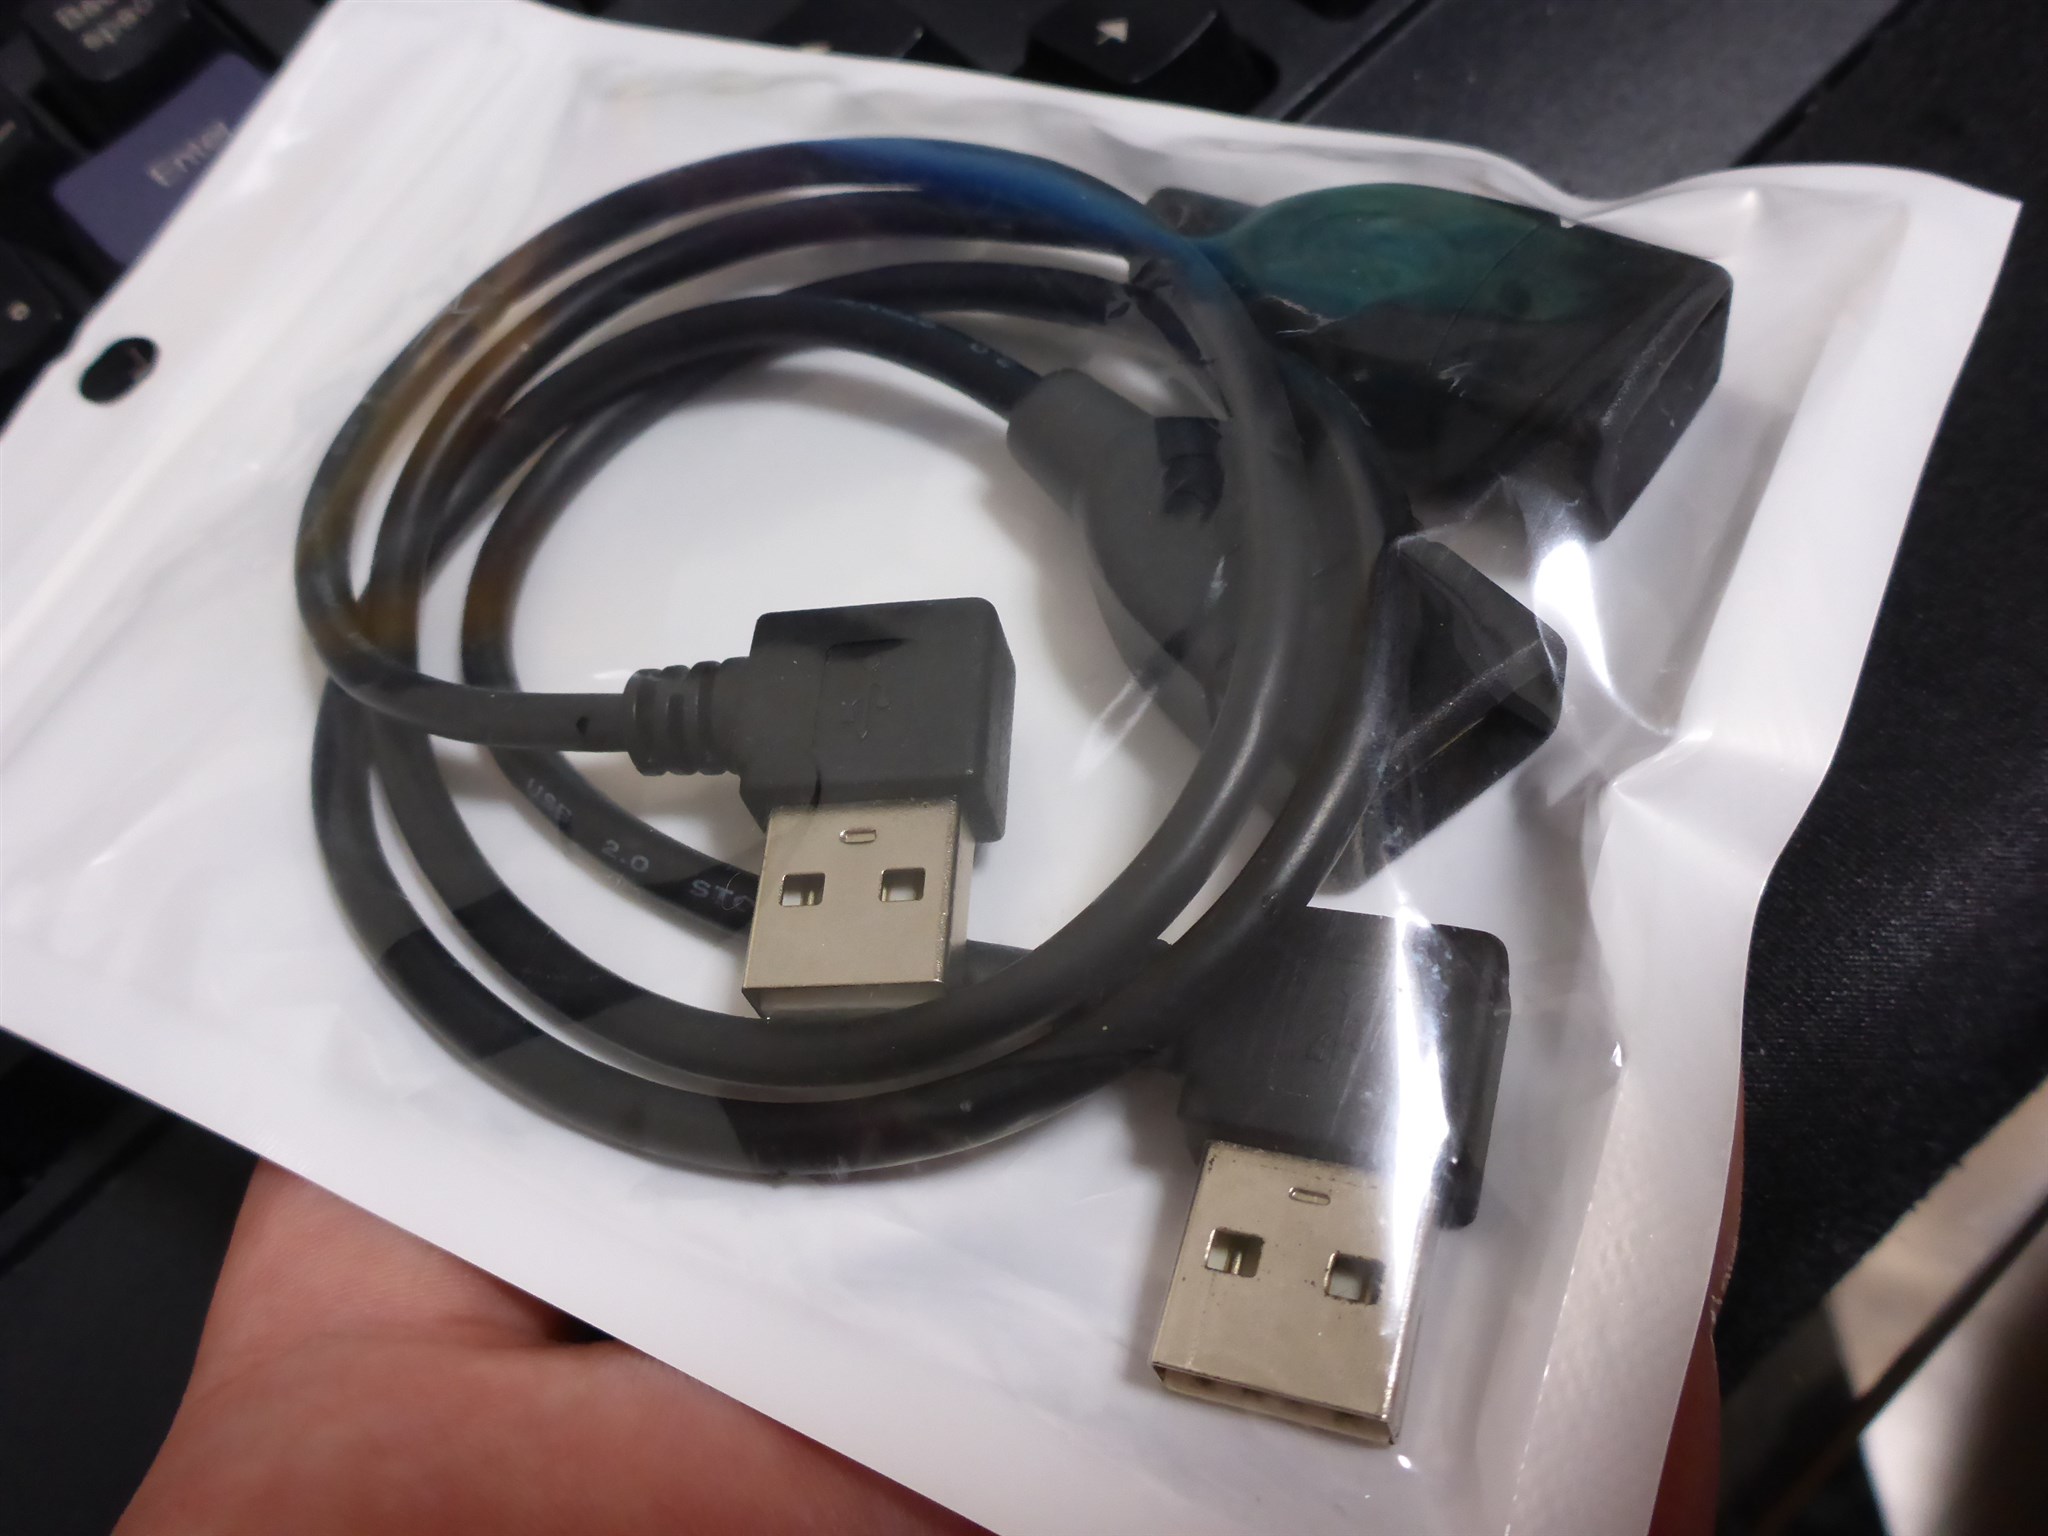 PS4のUSBを美観に。PS4背面にUSBポートを持っていくためのコネクタというか延長ケーブルを付けてみた